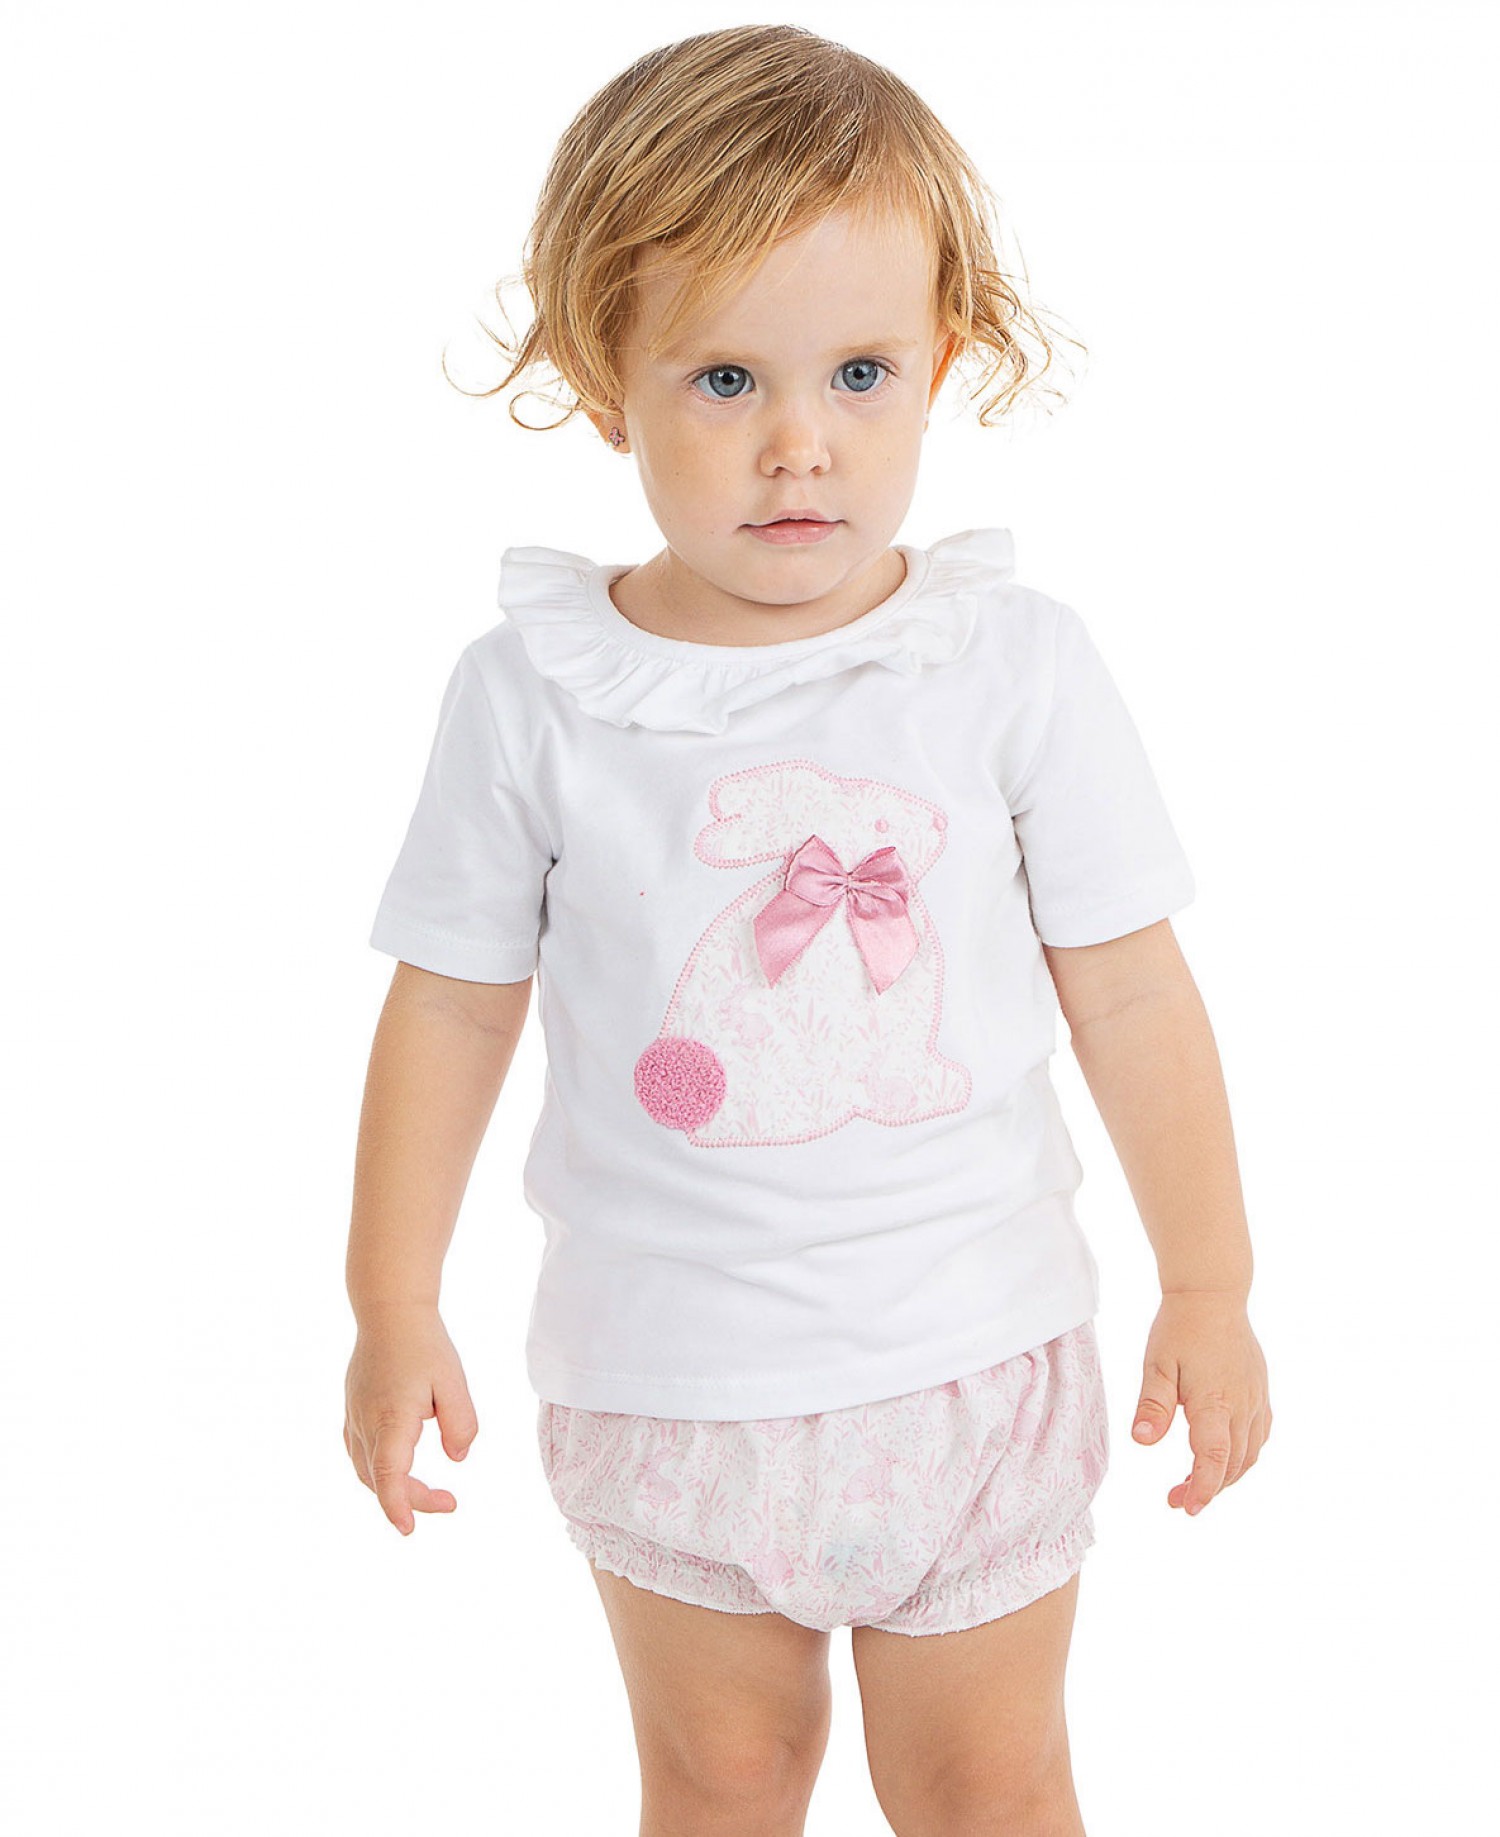 Conjunto para niña. Camiseta Blanca con detalles a rayas como la braguita